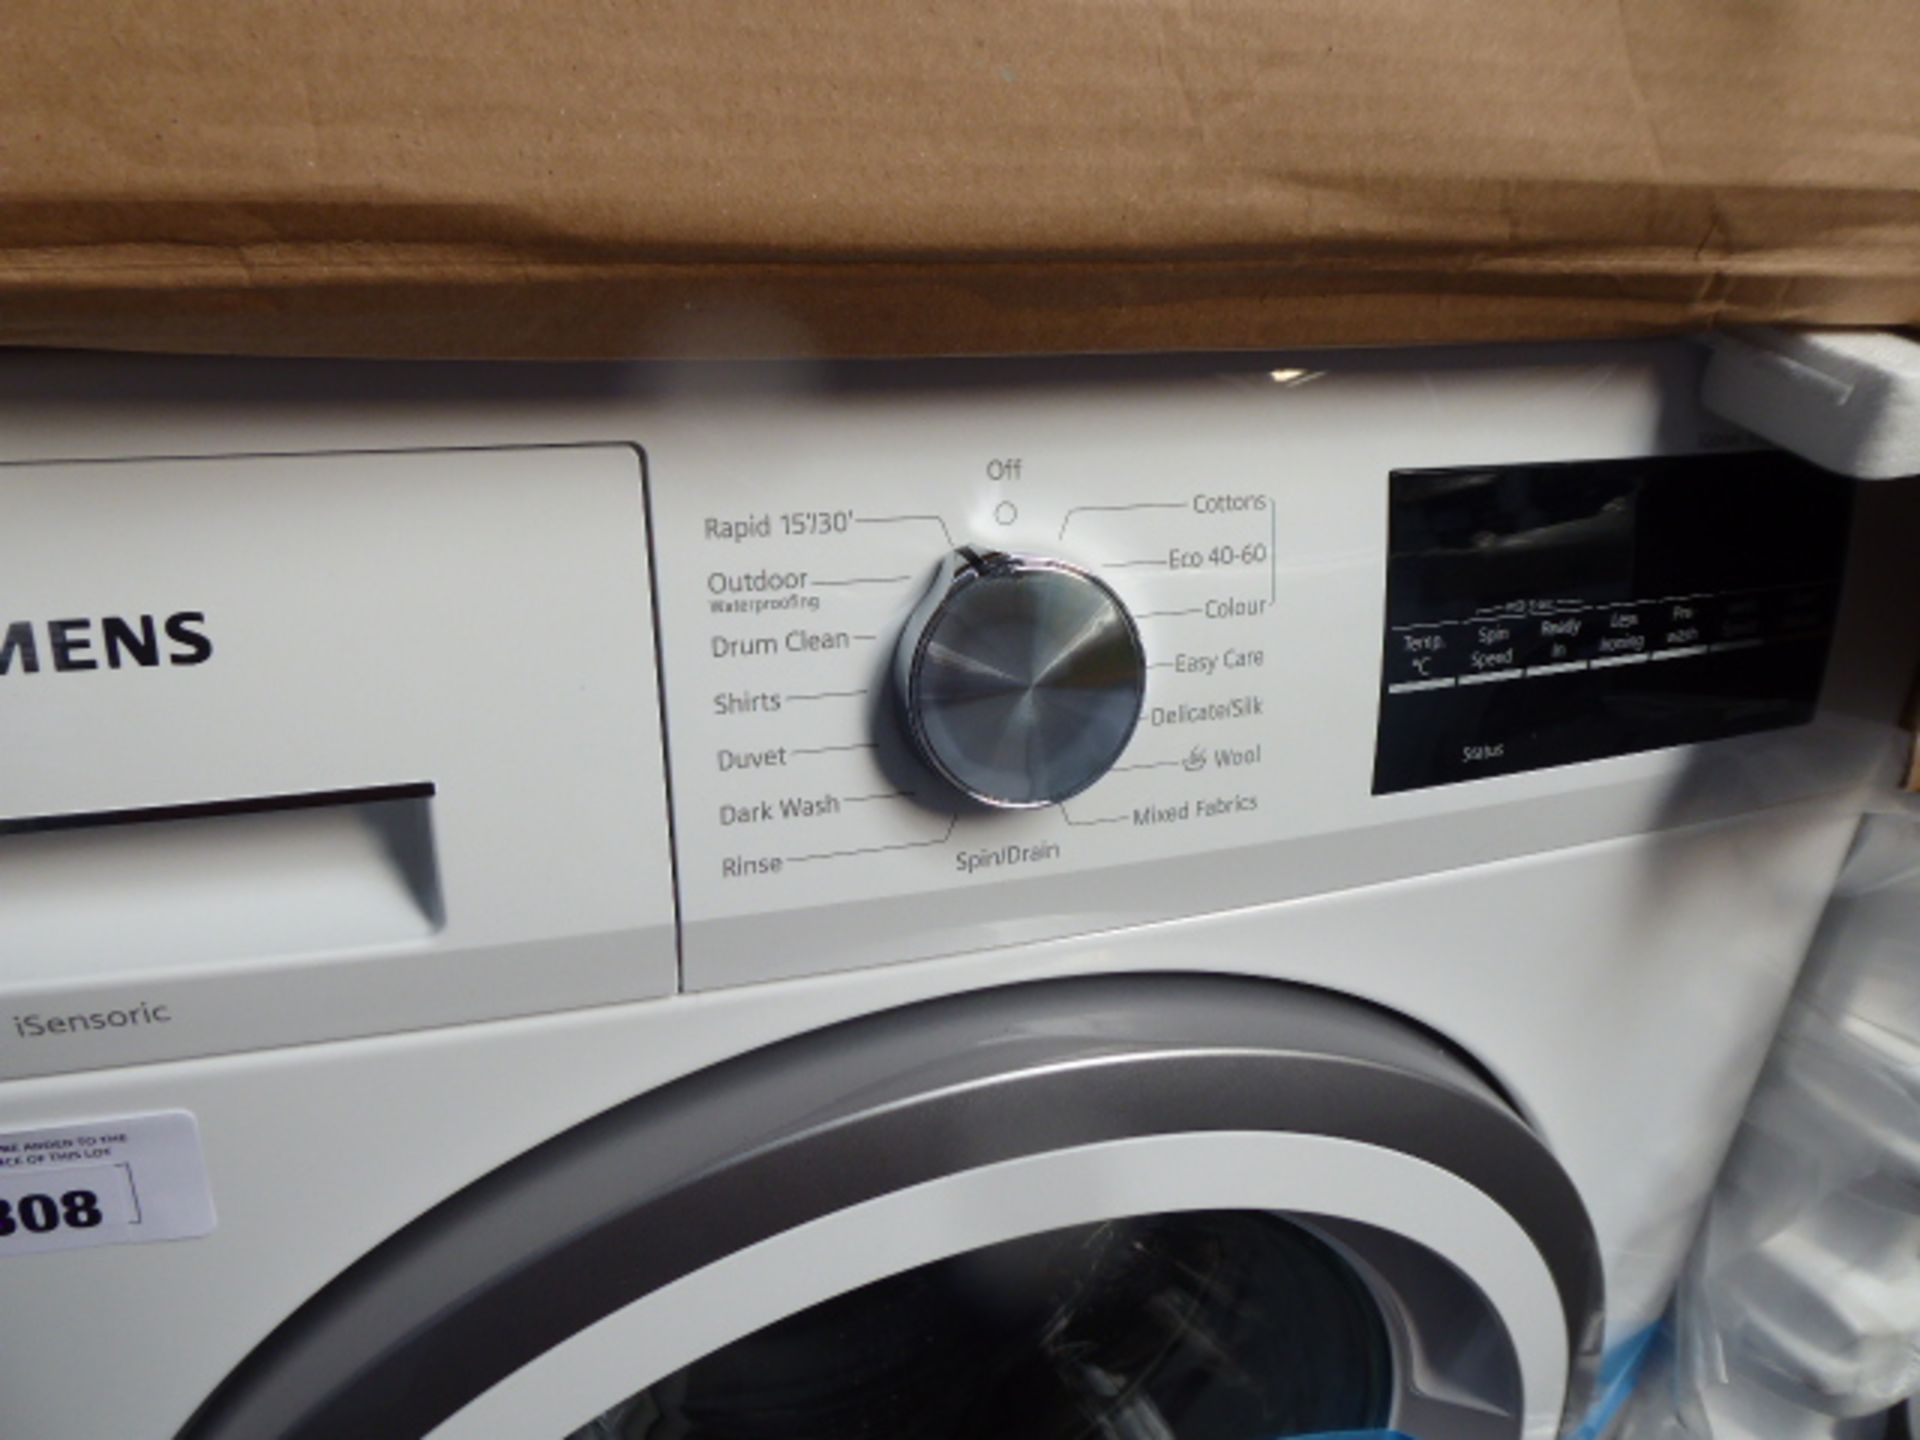 WM14UT93GBB Siemens Washing machine - Image 2 of 3